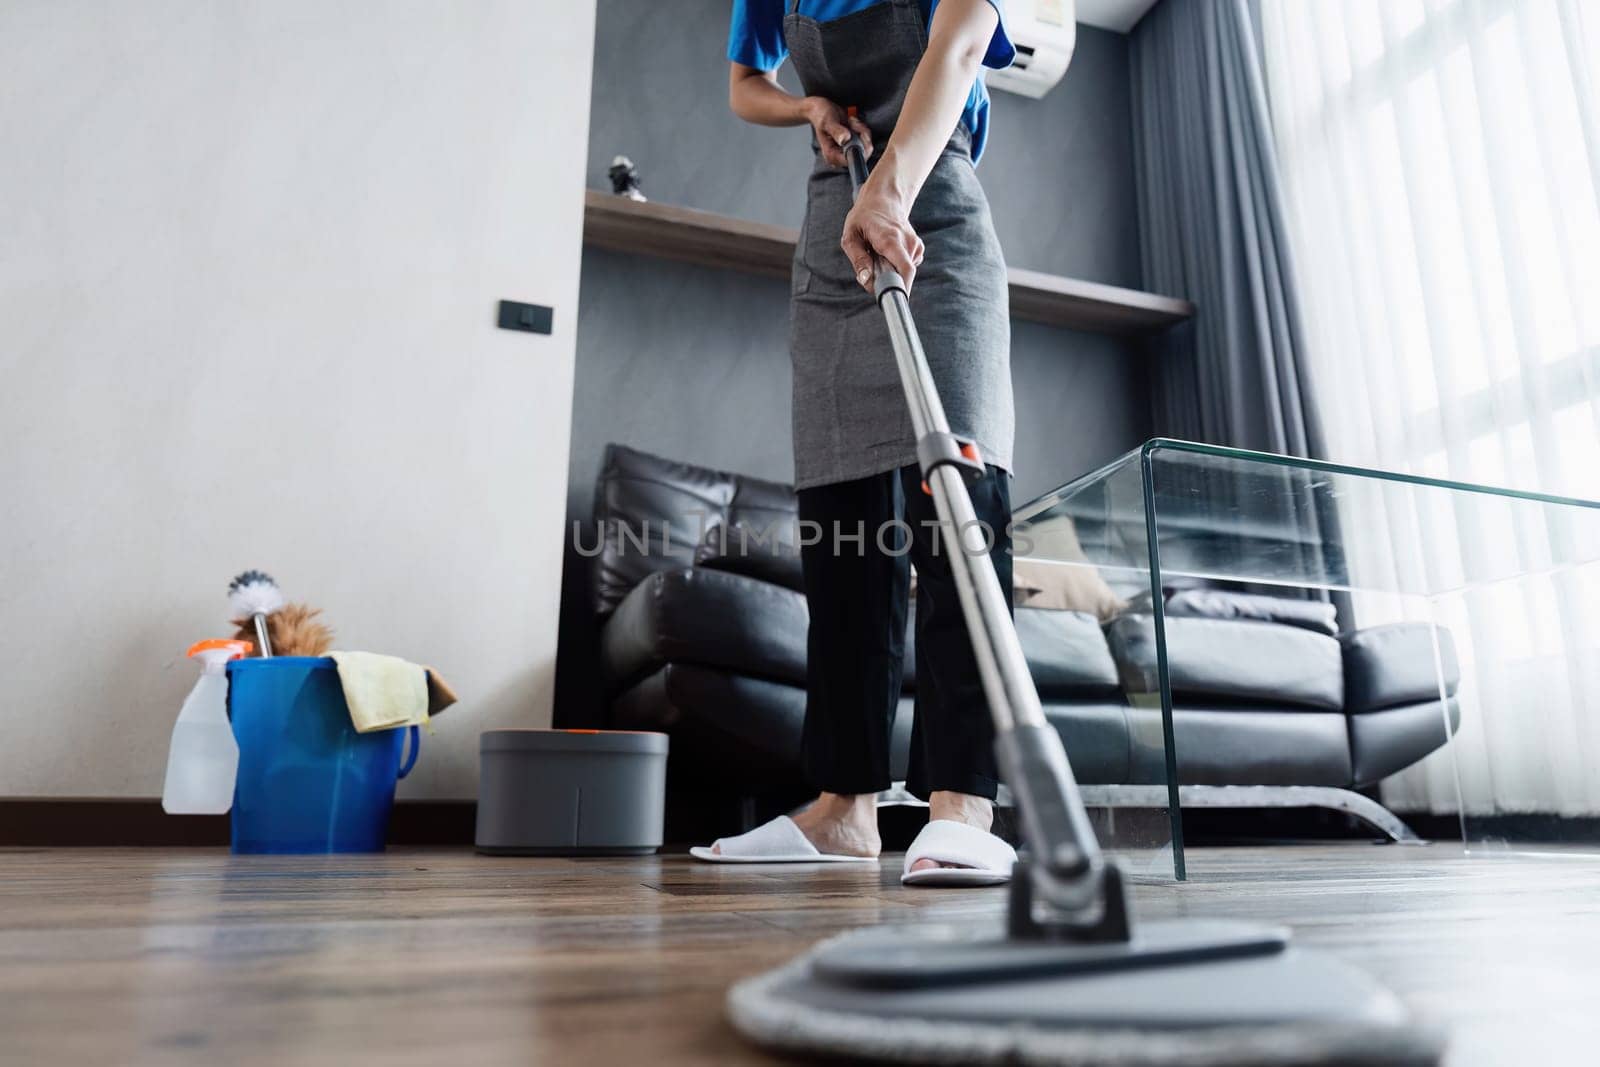 cleaning service housekeeper women swipe floor in living room. House cleaning service concept.